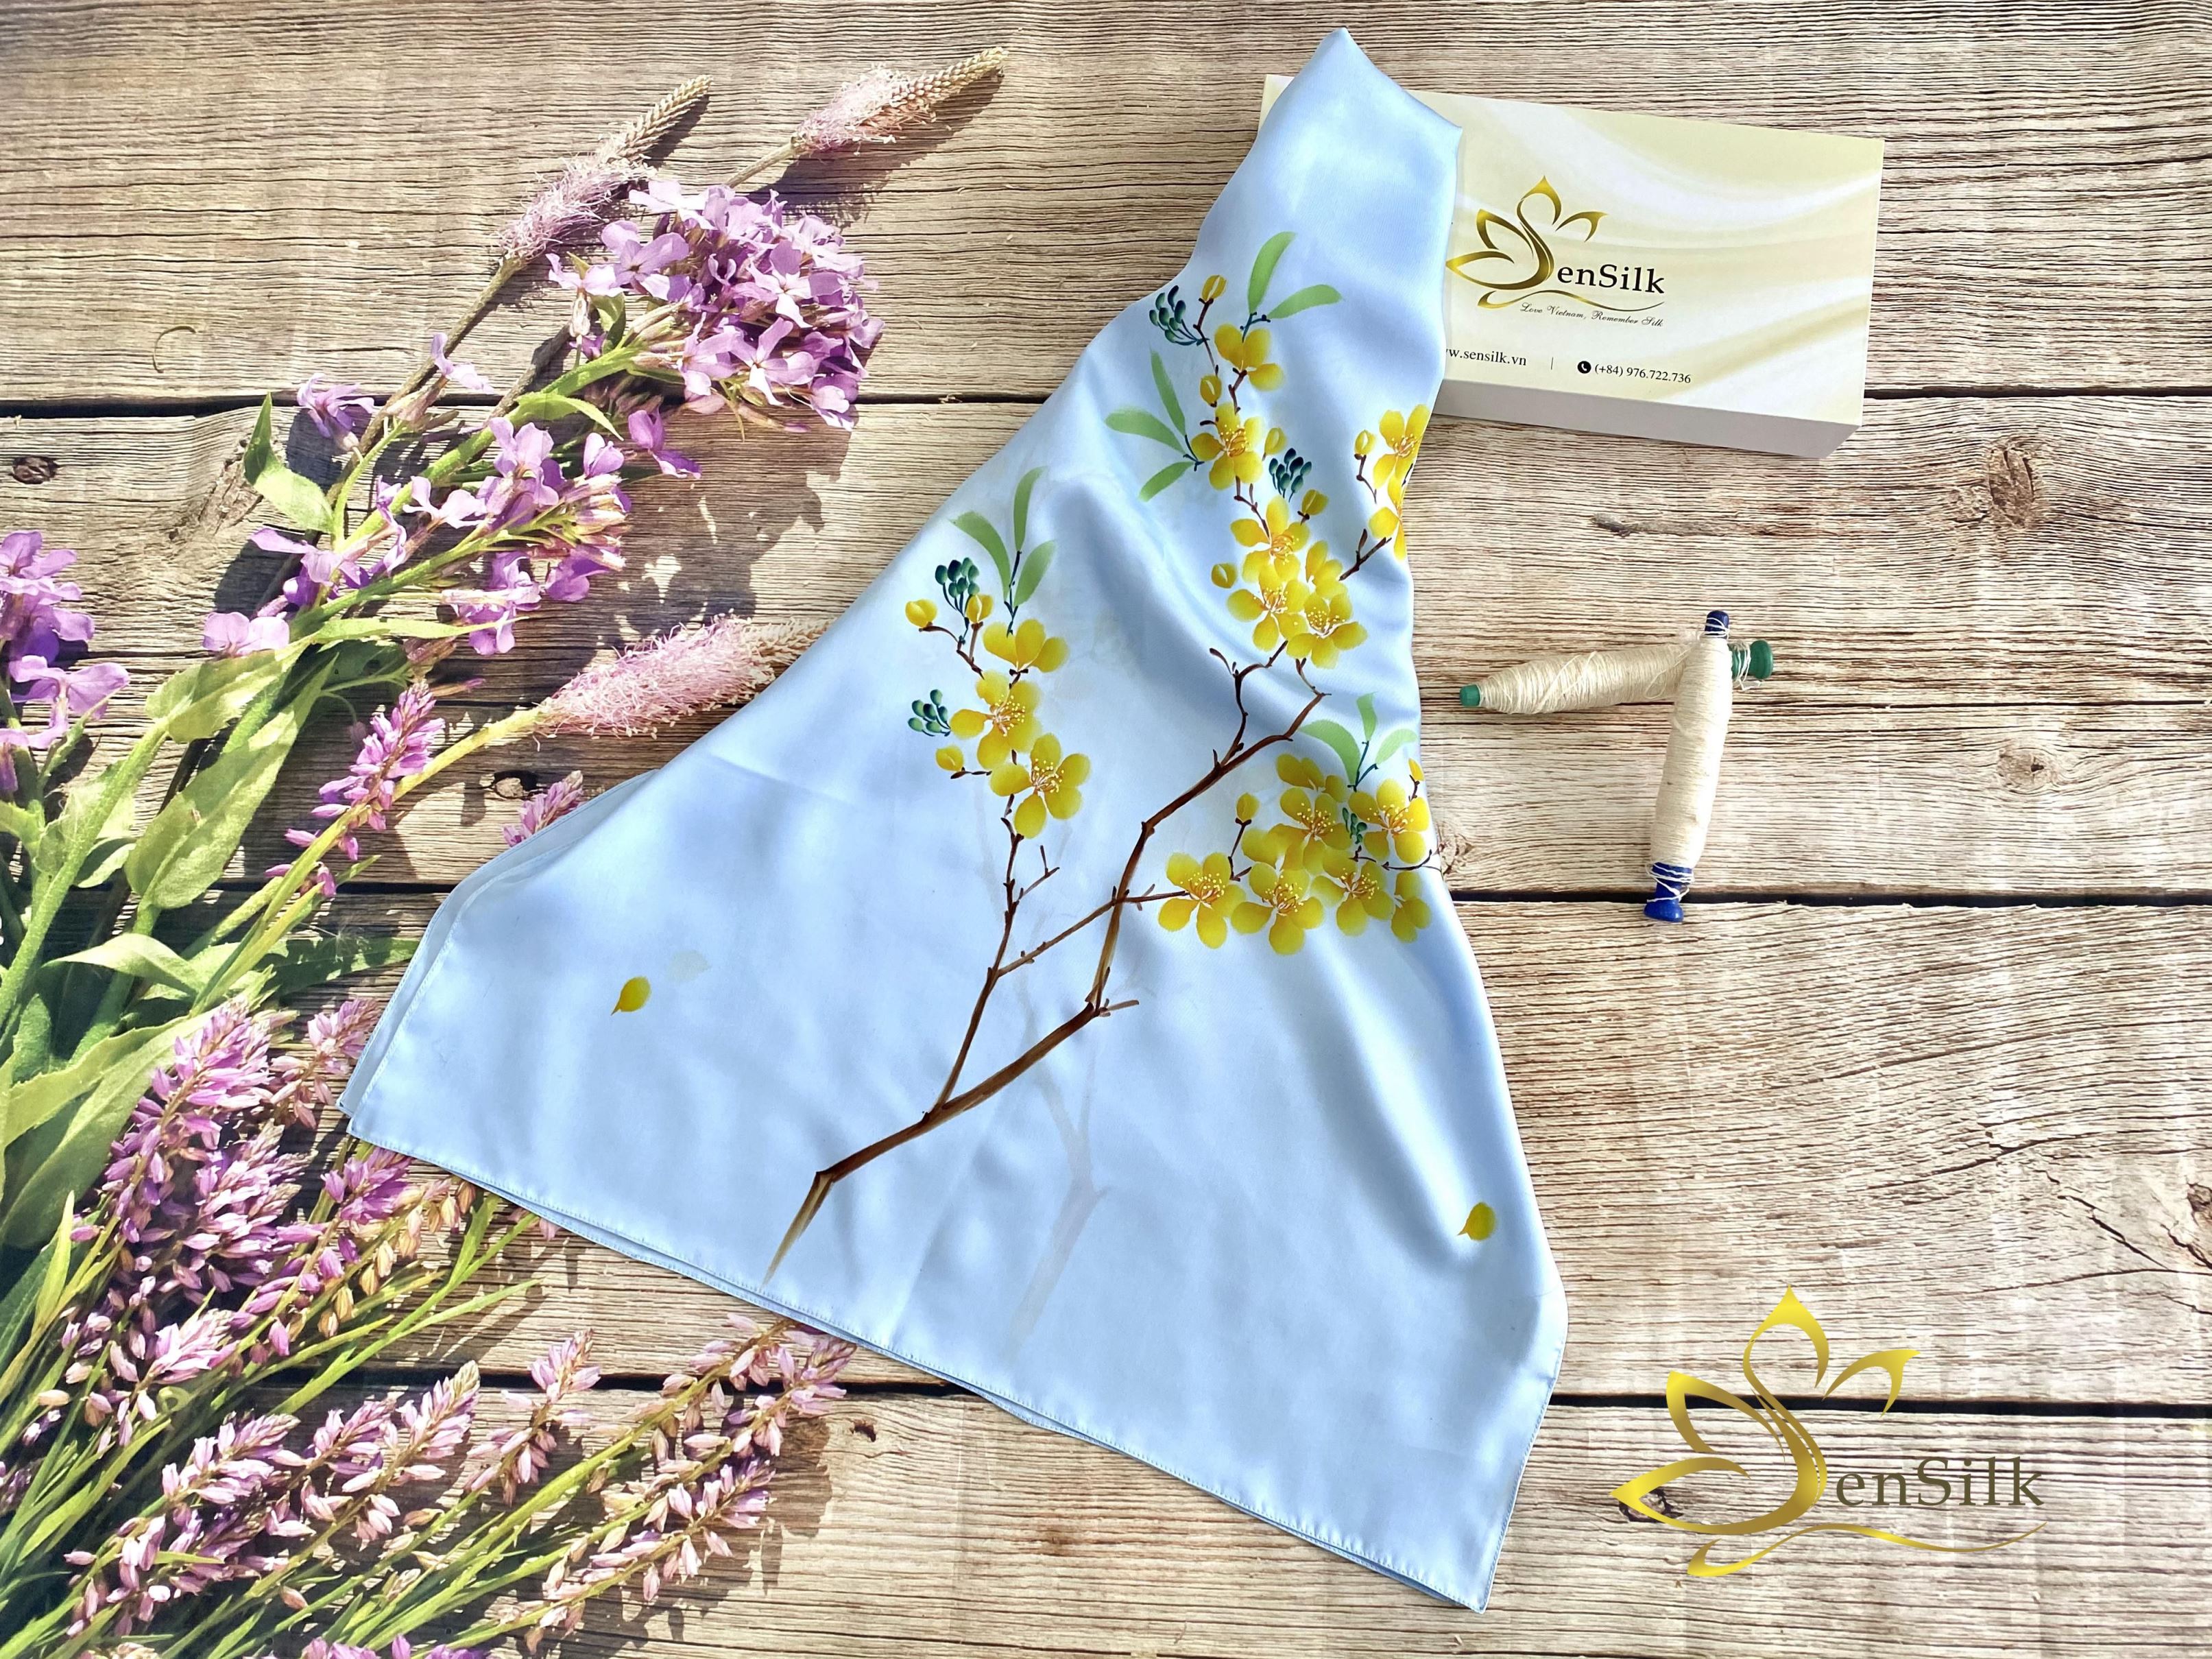 SenSilk Hand Drawing Silk Scarves - Tơ Lụa Bảo Lộc Vẽ Hoa Mai 180x55cm, Choàng Cổ Lụa Thời Trang Cho Phái Đẹp